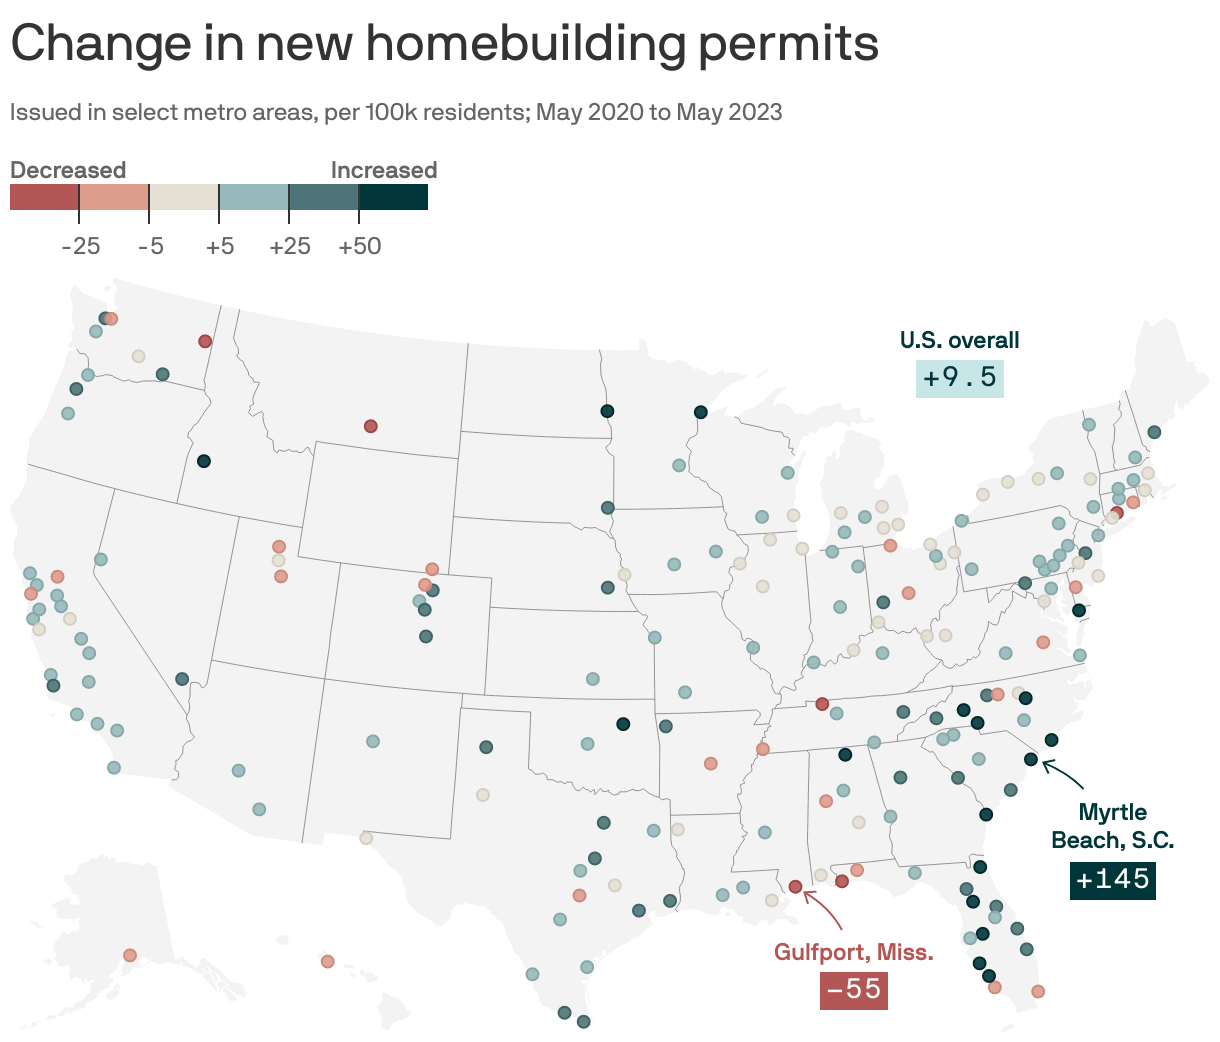 Change in new home-building permits per capita